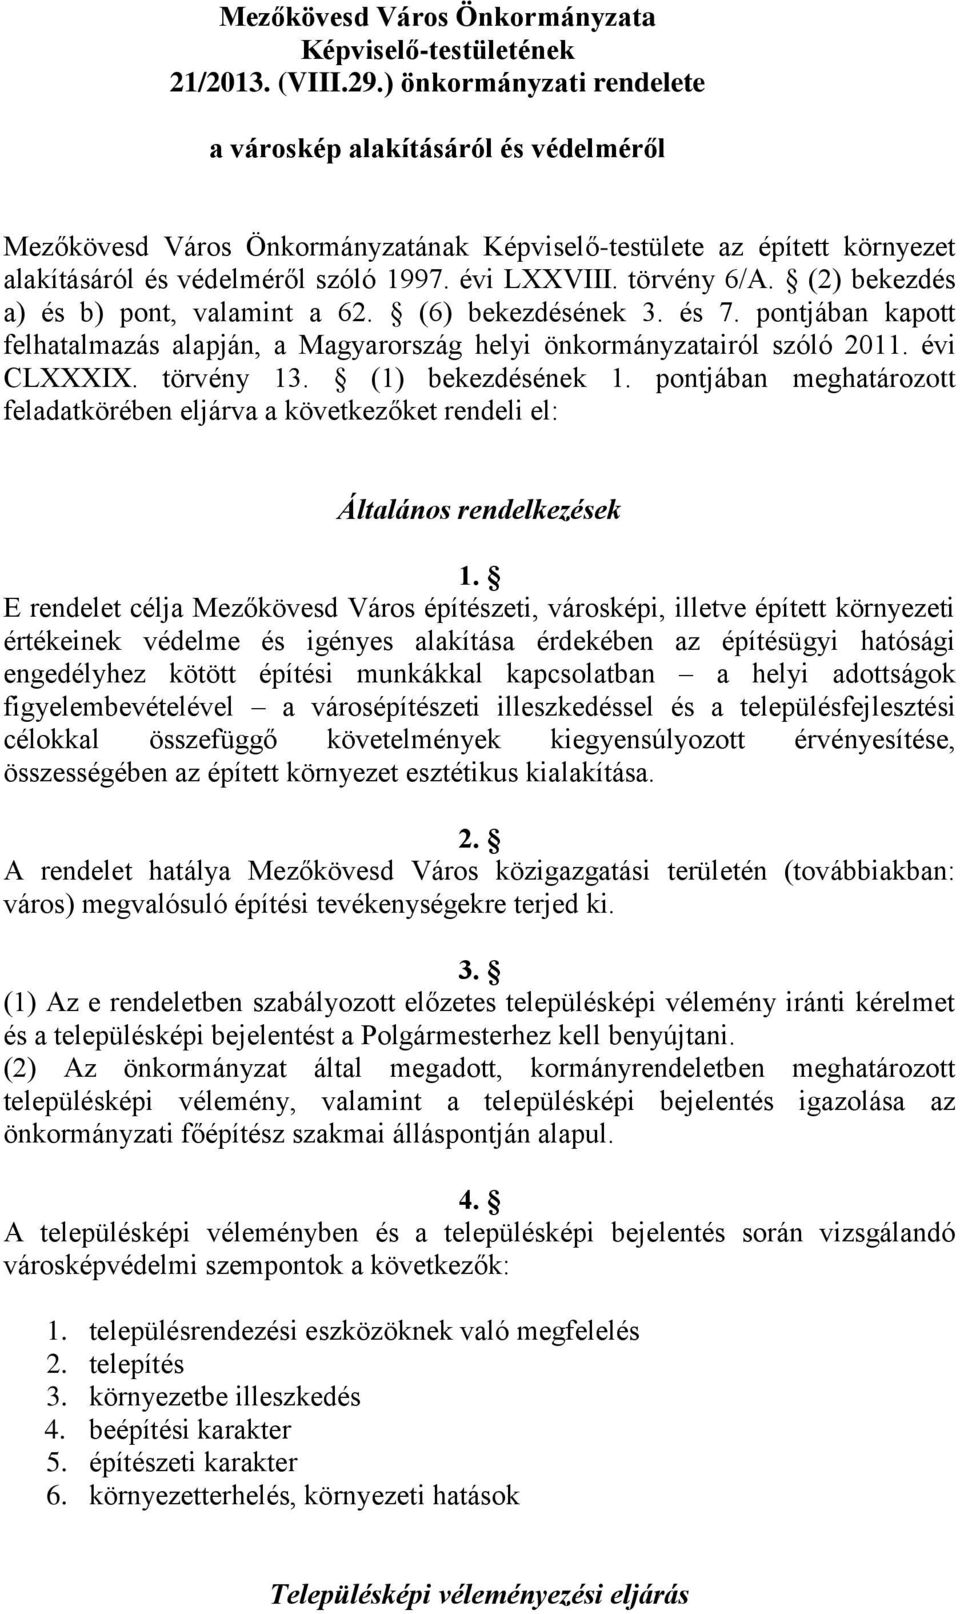 törvény 6/A. (2) bekezdés a) és b) pont, valamint a 62. (6) bekezdésének 3. és 7. pontjában kapott felhatalmazás alapján, a Magyarország helyi önkormányzatairól szóló 2011. évi CLXXXIX. törvény 13.